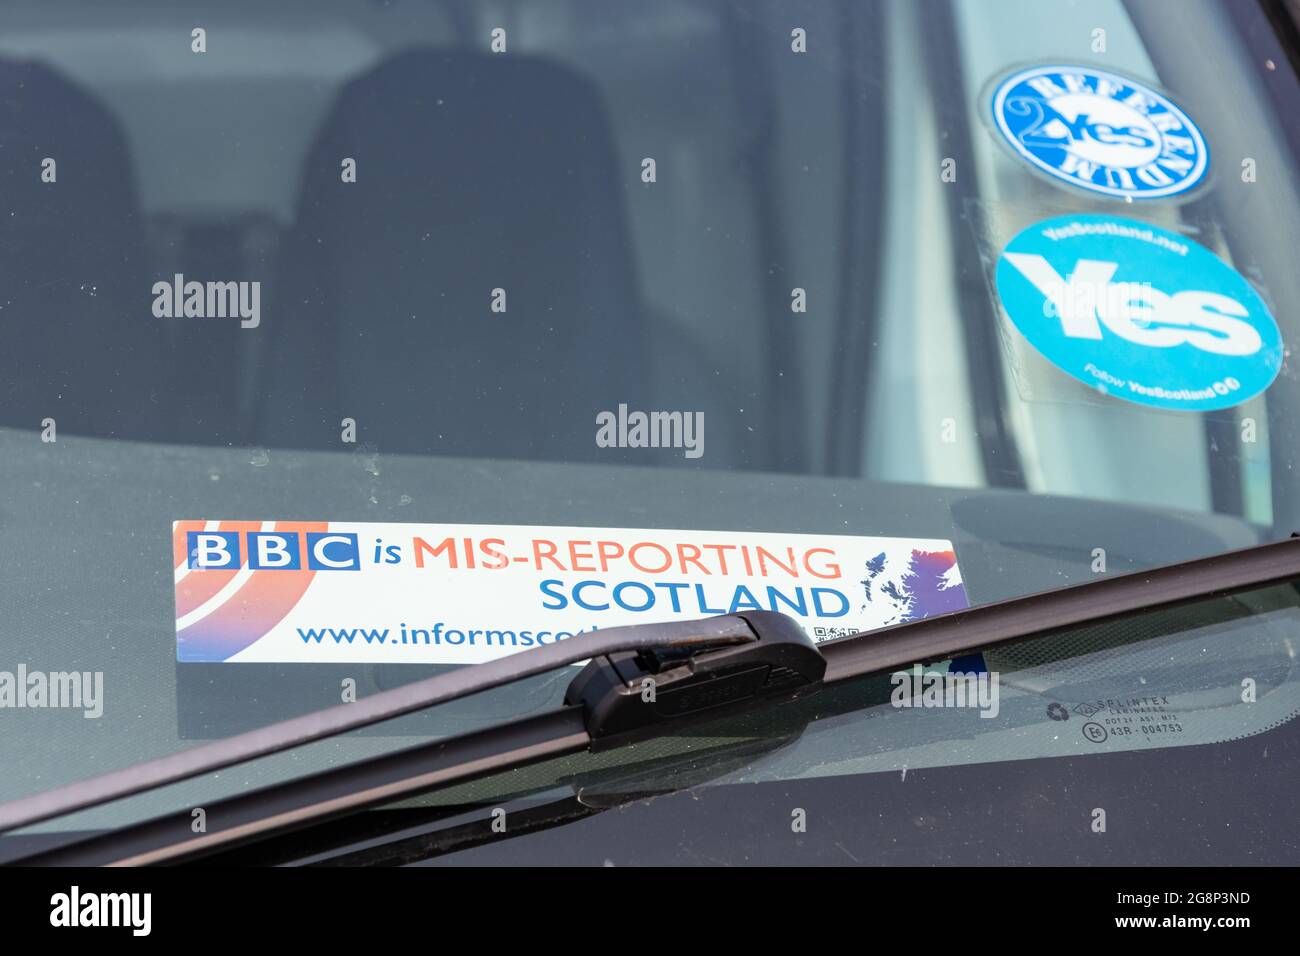 Informieren Sie Schottland: „die BBC meldet Schottland von Mis“-Aufkleber bei Fahrzeugkampagnen gegen BBC Scotland Bias - Schottland, Großbritannien Stockfoto